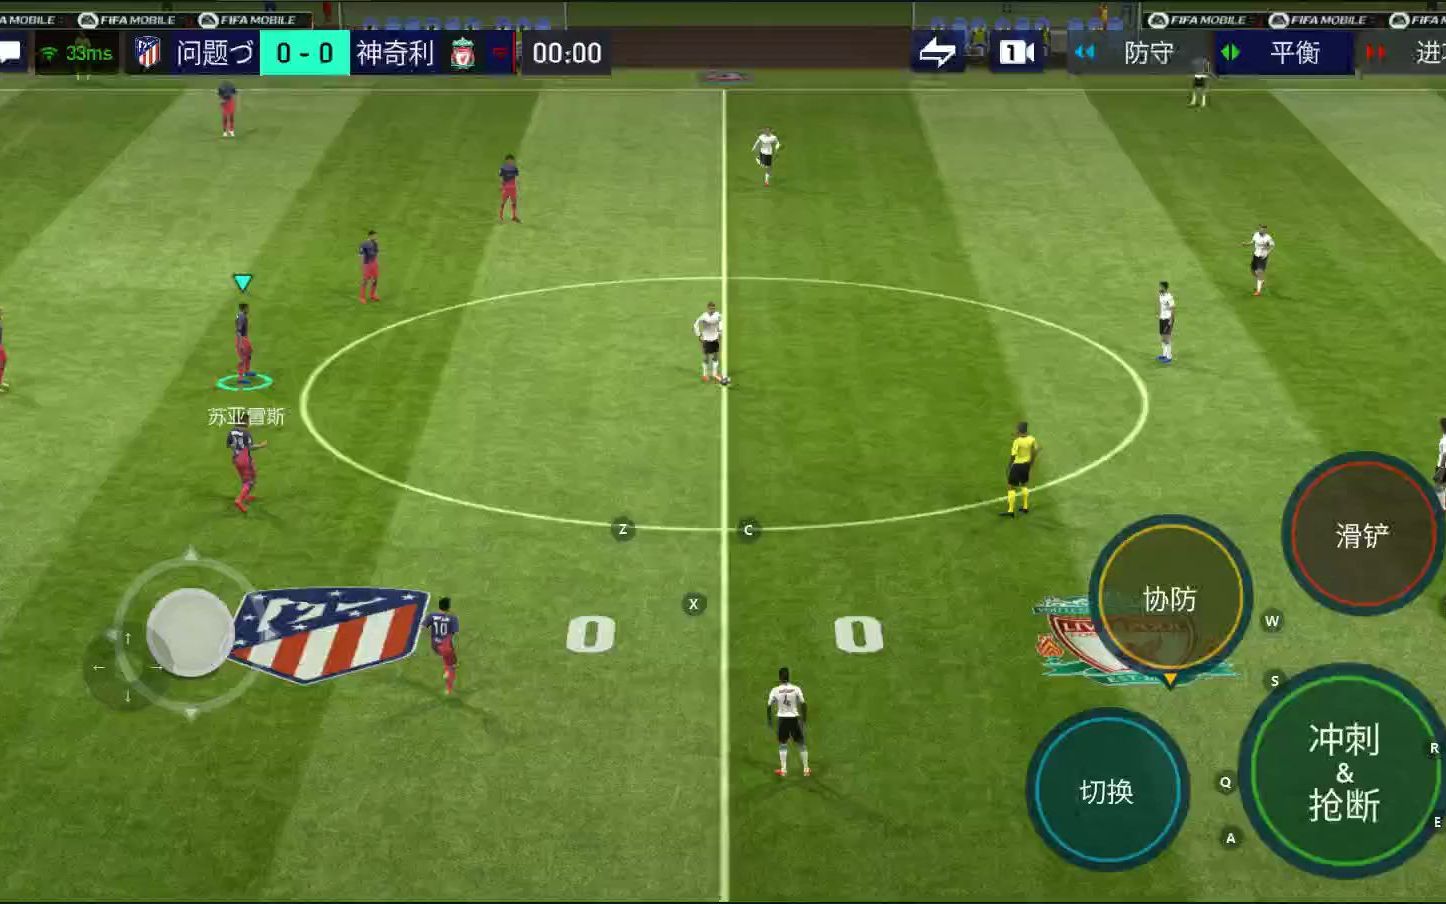 足球题材手游_足球风格的手机游戏推荐_足球风格推荐手机游戏